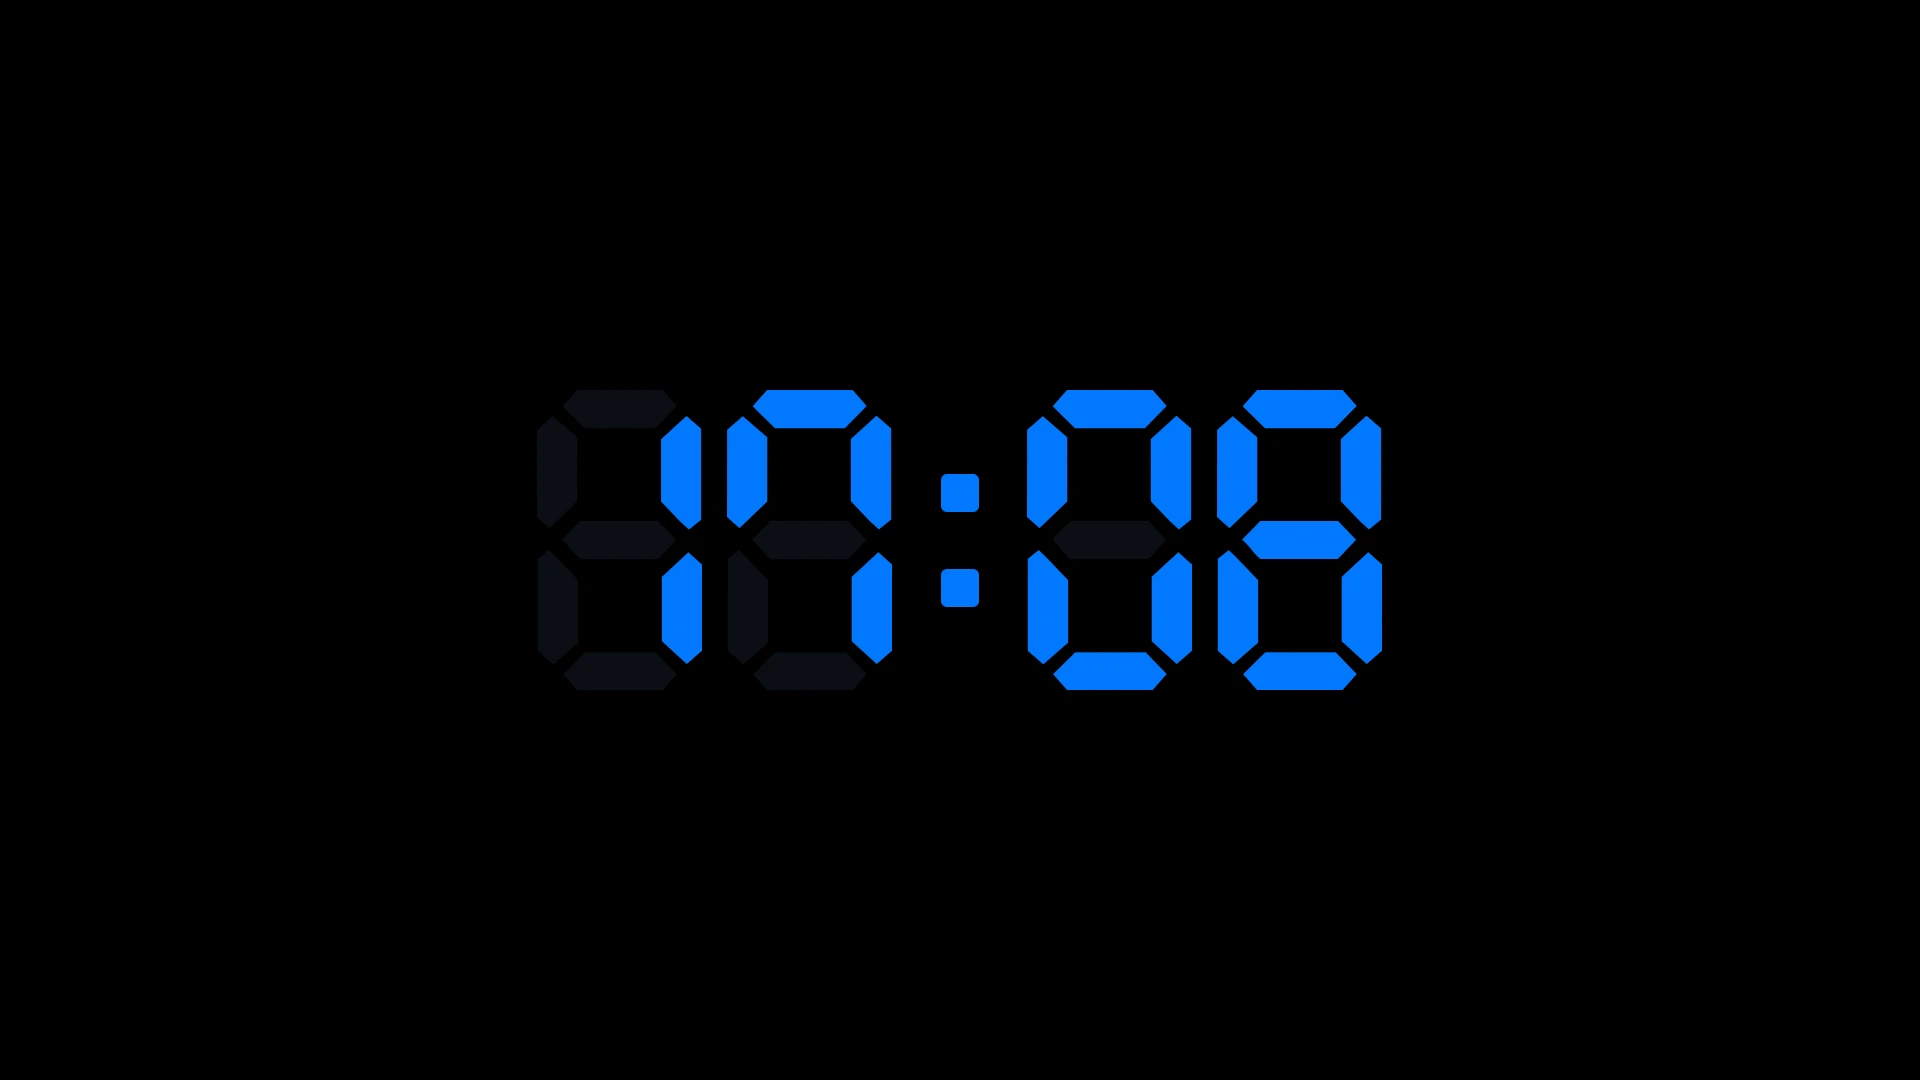 让时钟变得更有个性化;加油表时钟屏保第十个:经典日历时钟屏保,黑色